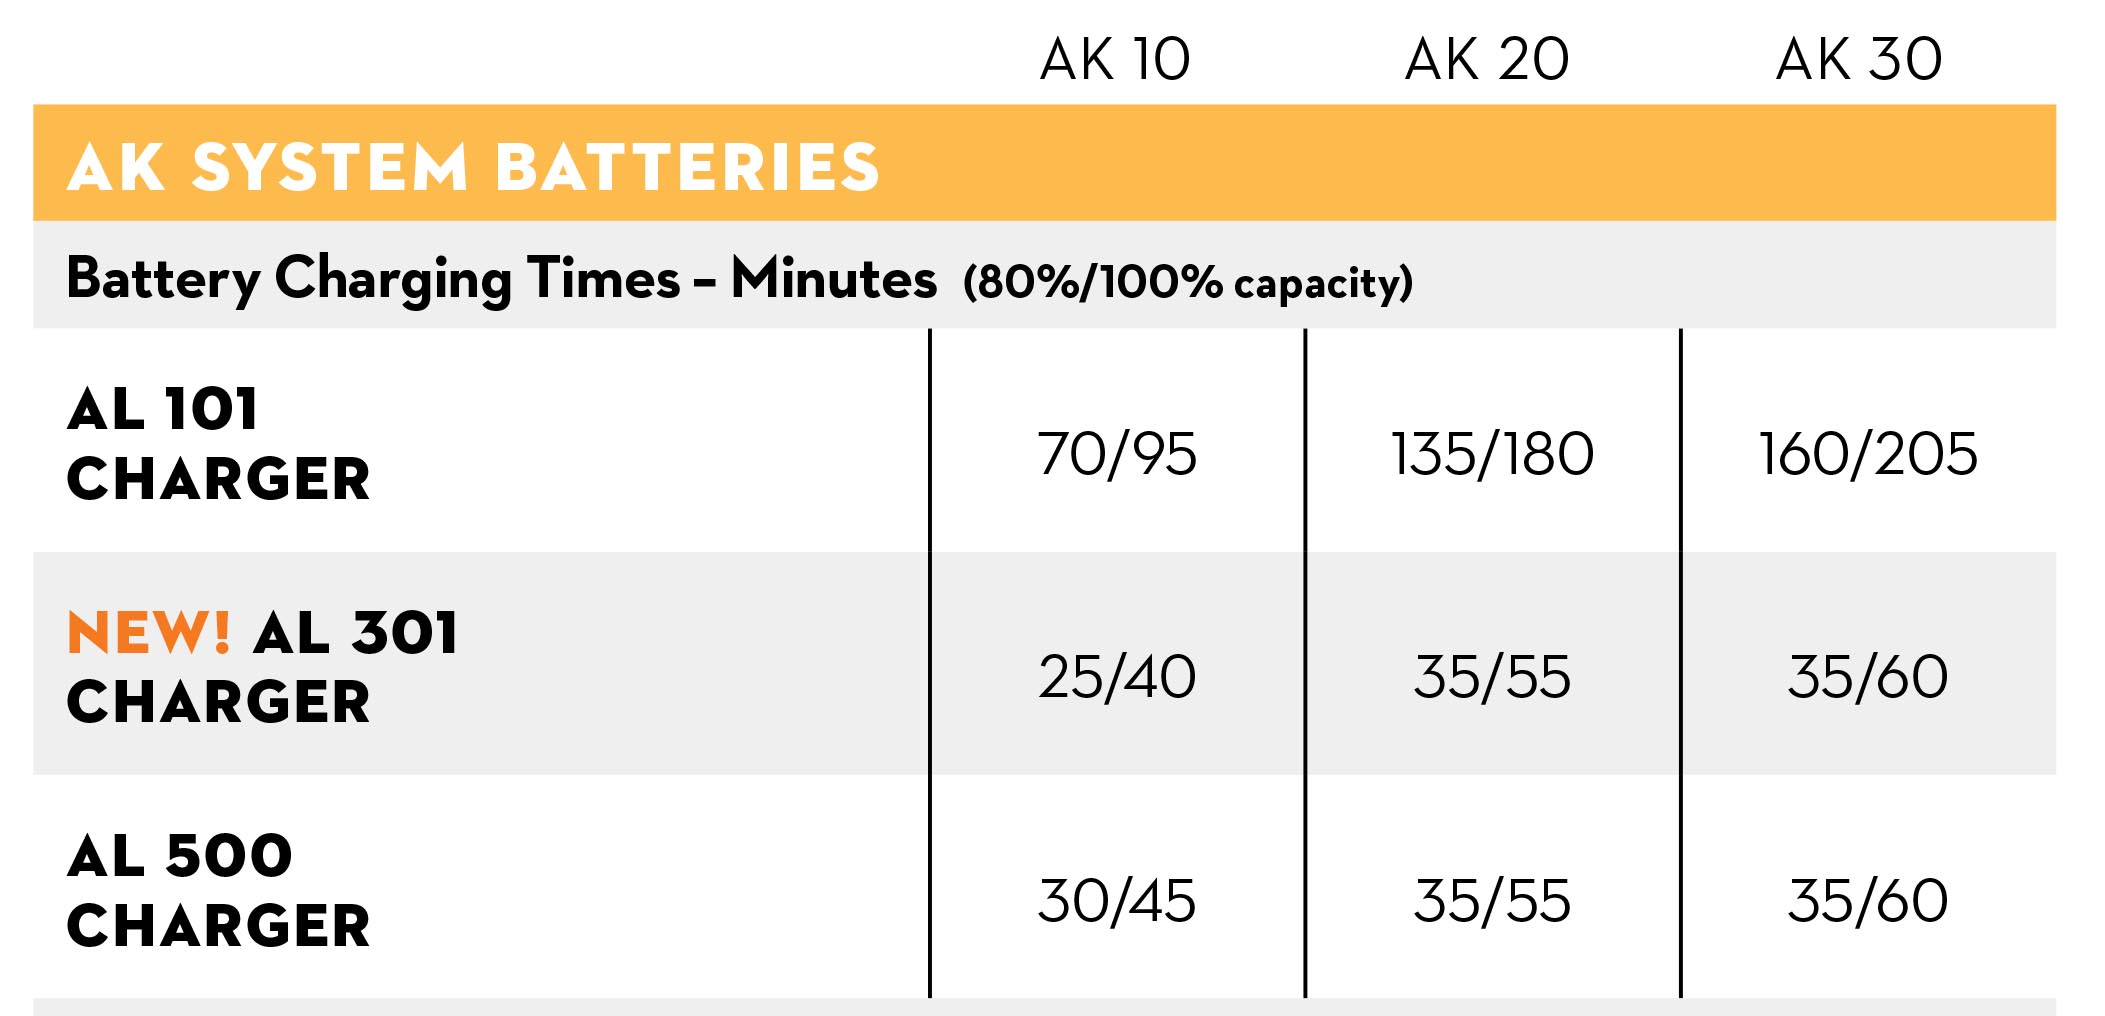 AKsystem-recharge-time-data-sheet